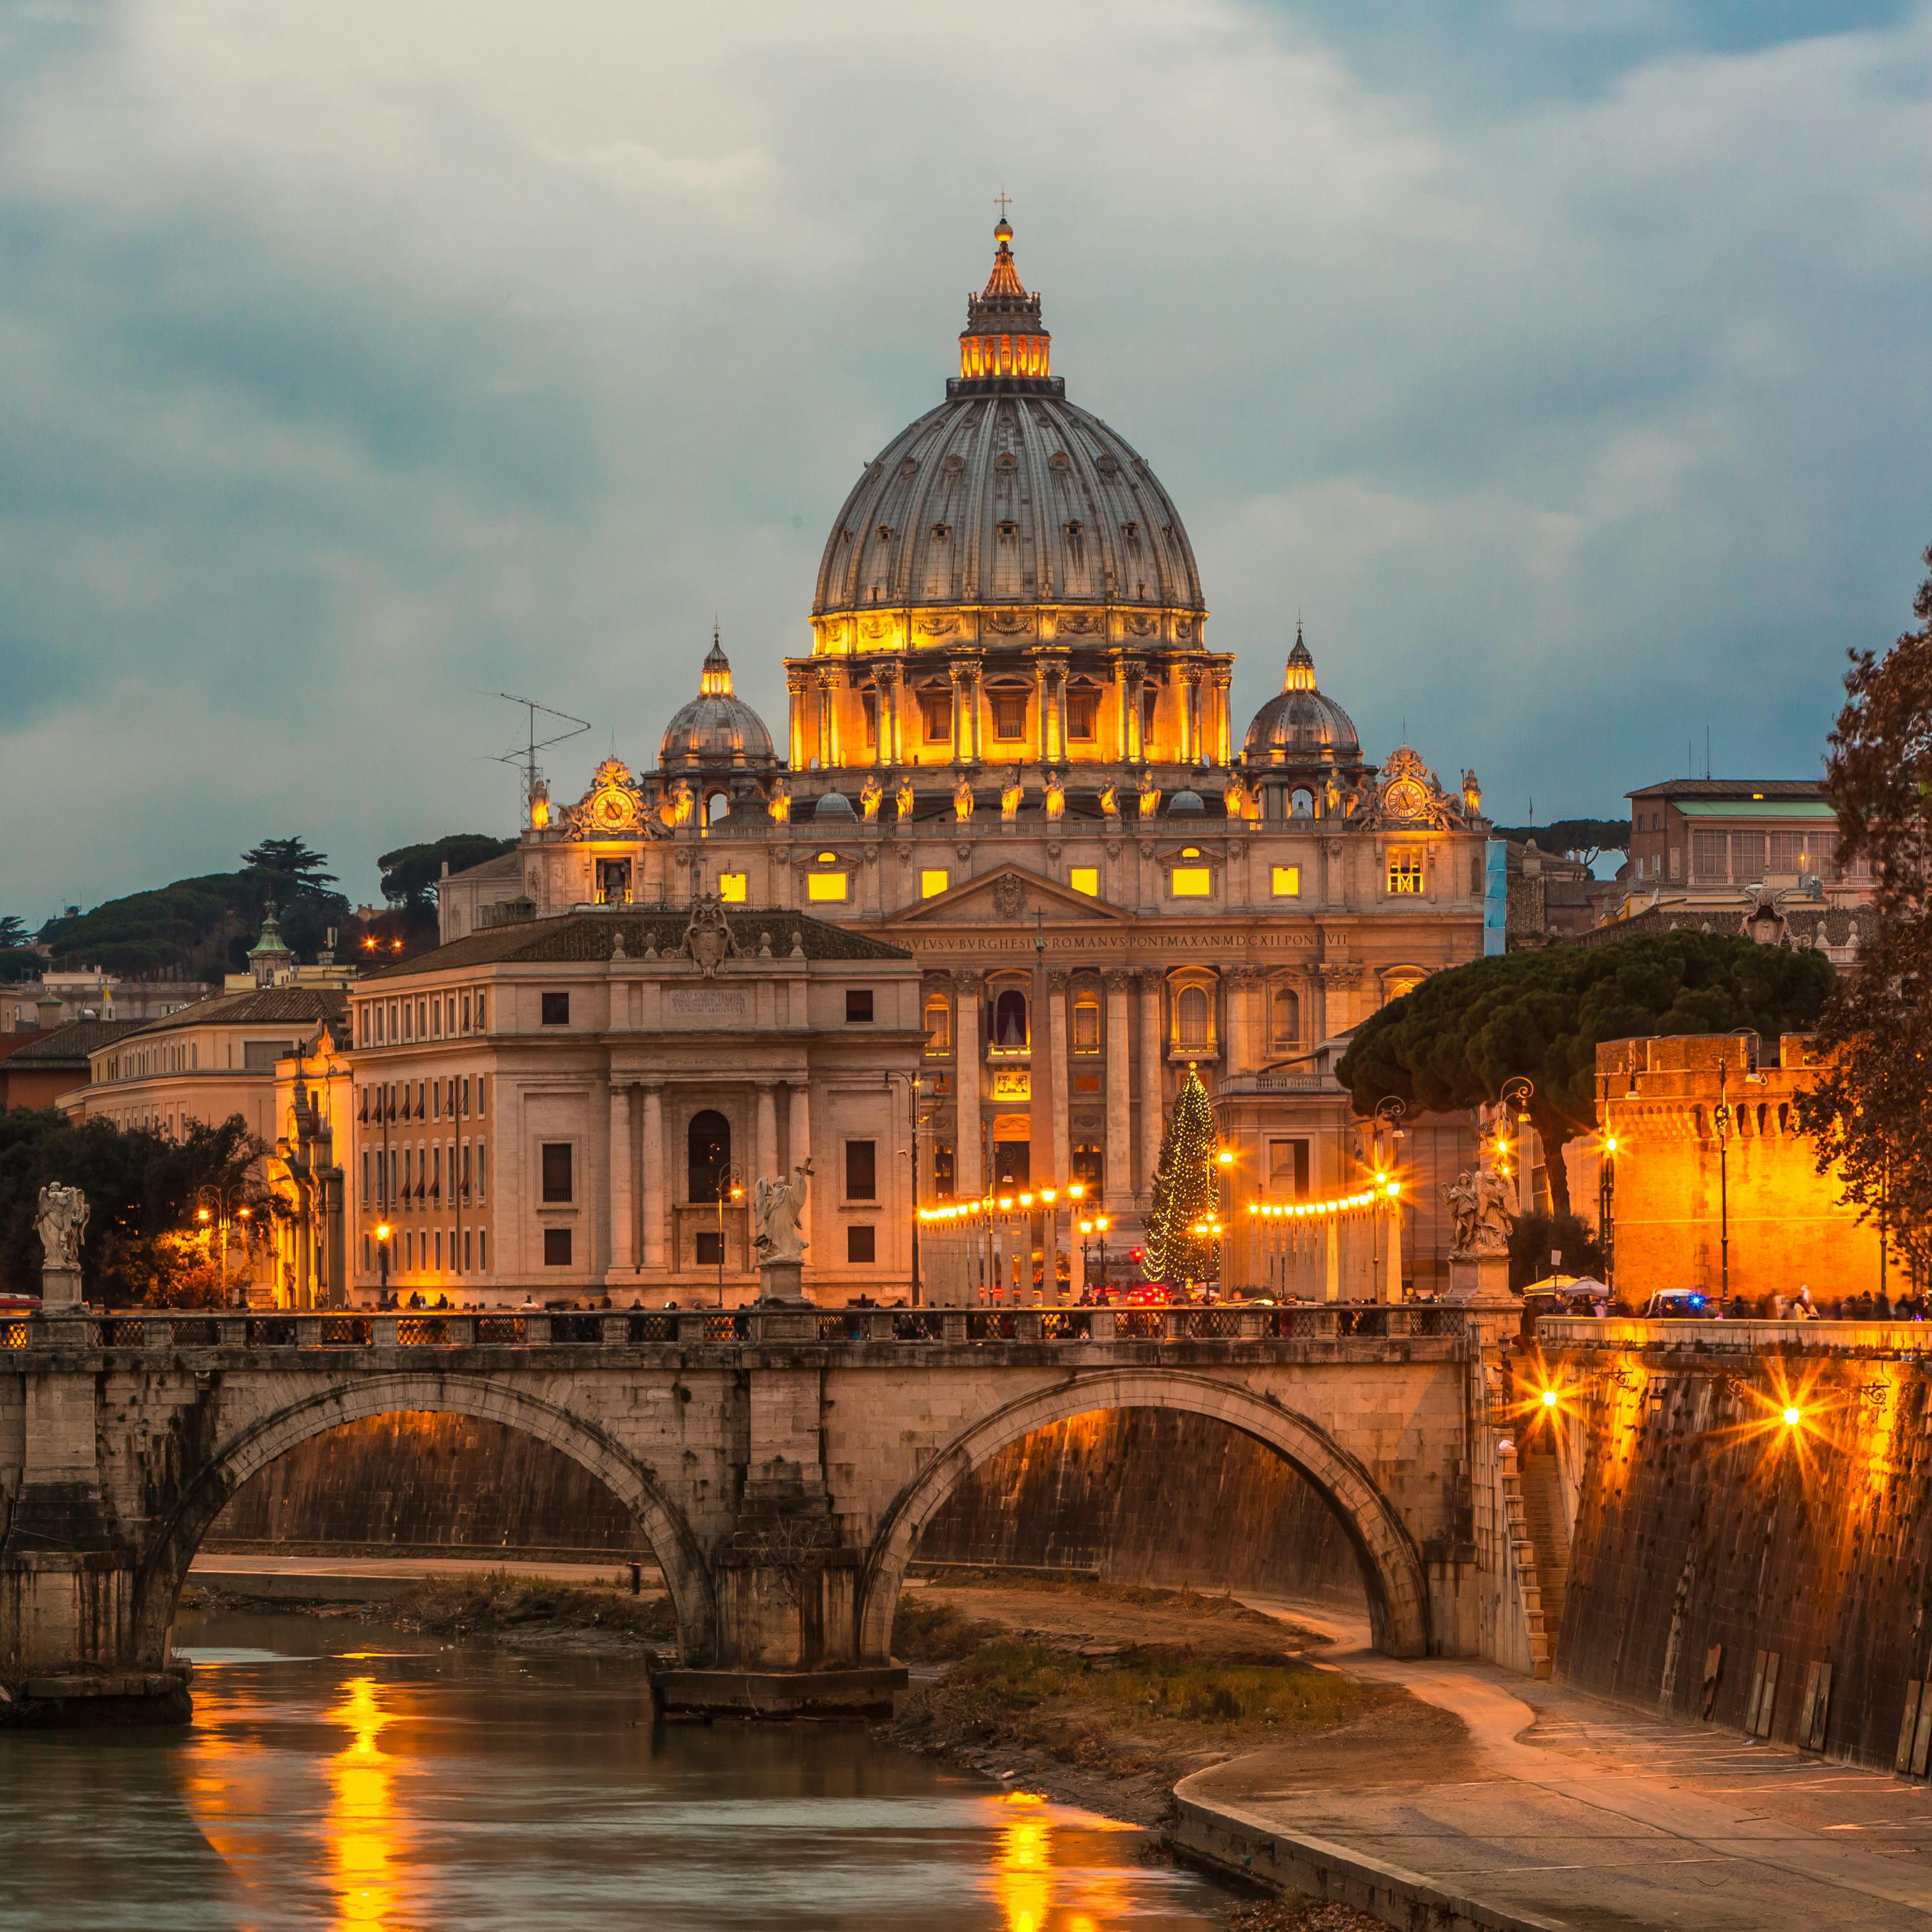 Rejsetips: Oplev Rom i december og kom i julestemning med smukke julelys